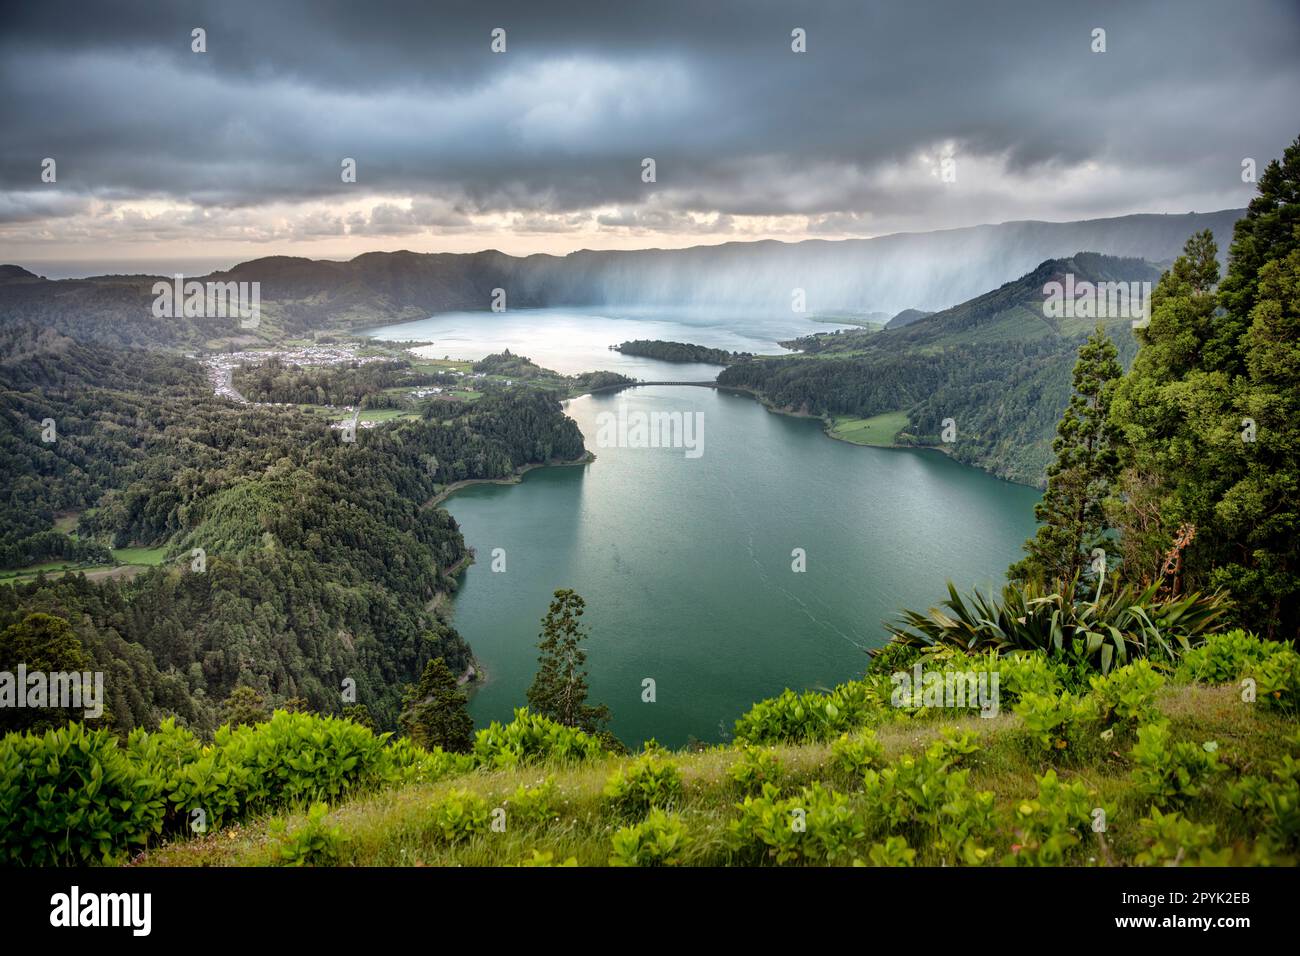 Portogallo, Azzorre, Isola di Sao Miguel, Sete Cidades. I due laghi blu e verde dal punto di vista di Vista do Rei. Alba. Pioggia. Antenna. Foto Stock